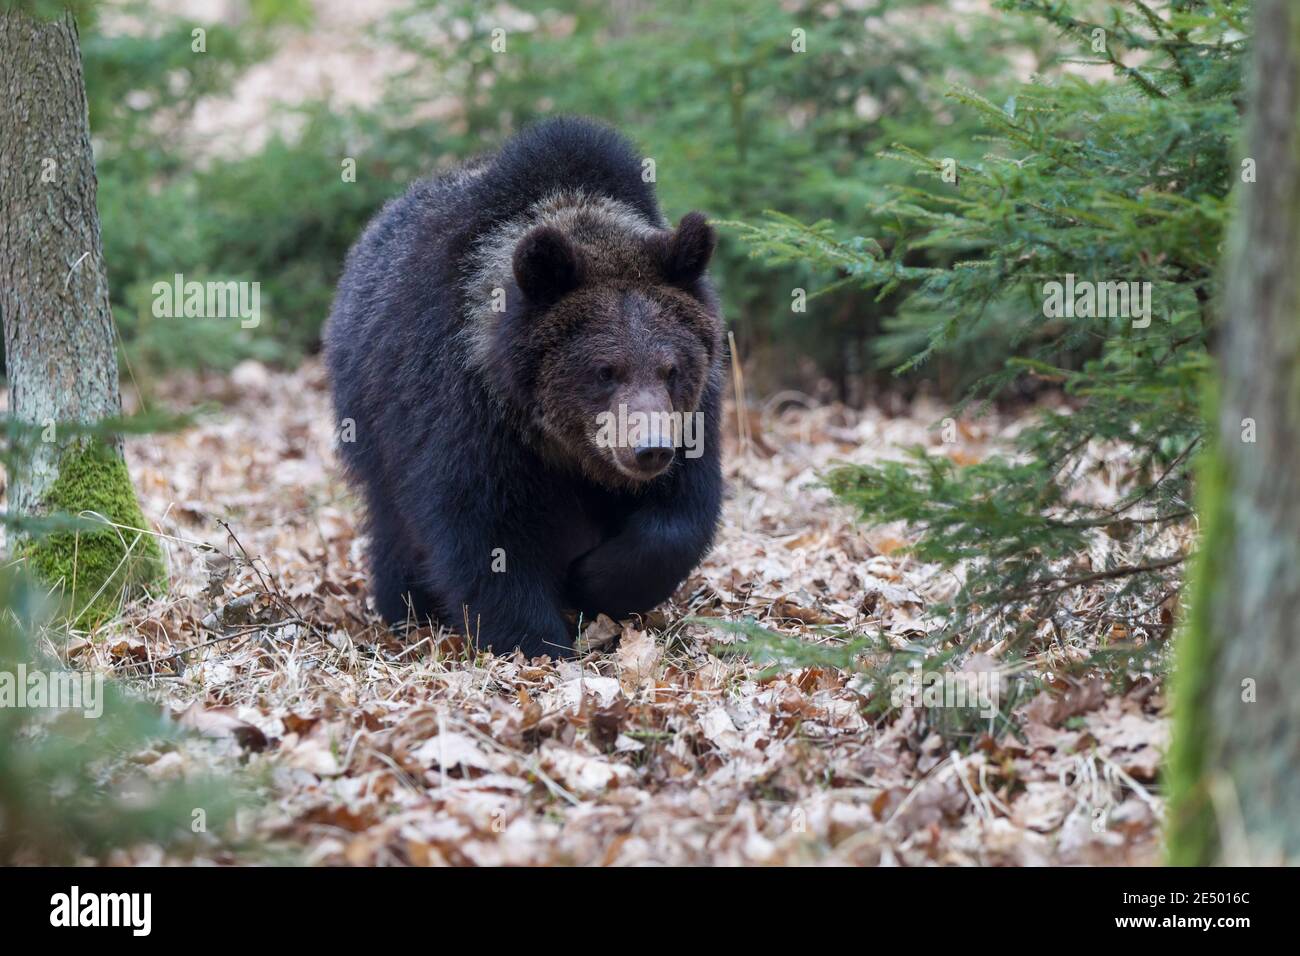 Braunbaer, Ursus arctos, brown bear Stock Photo